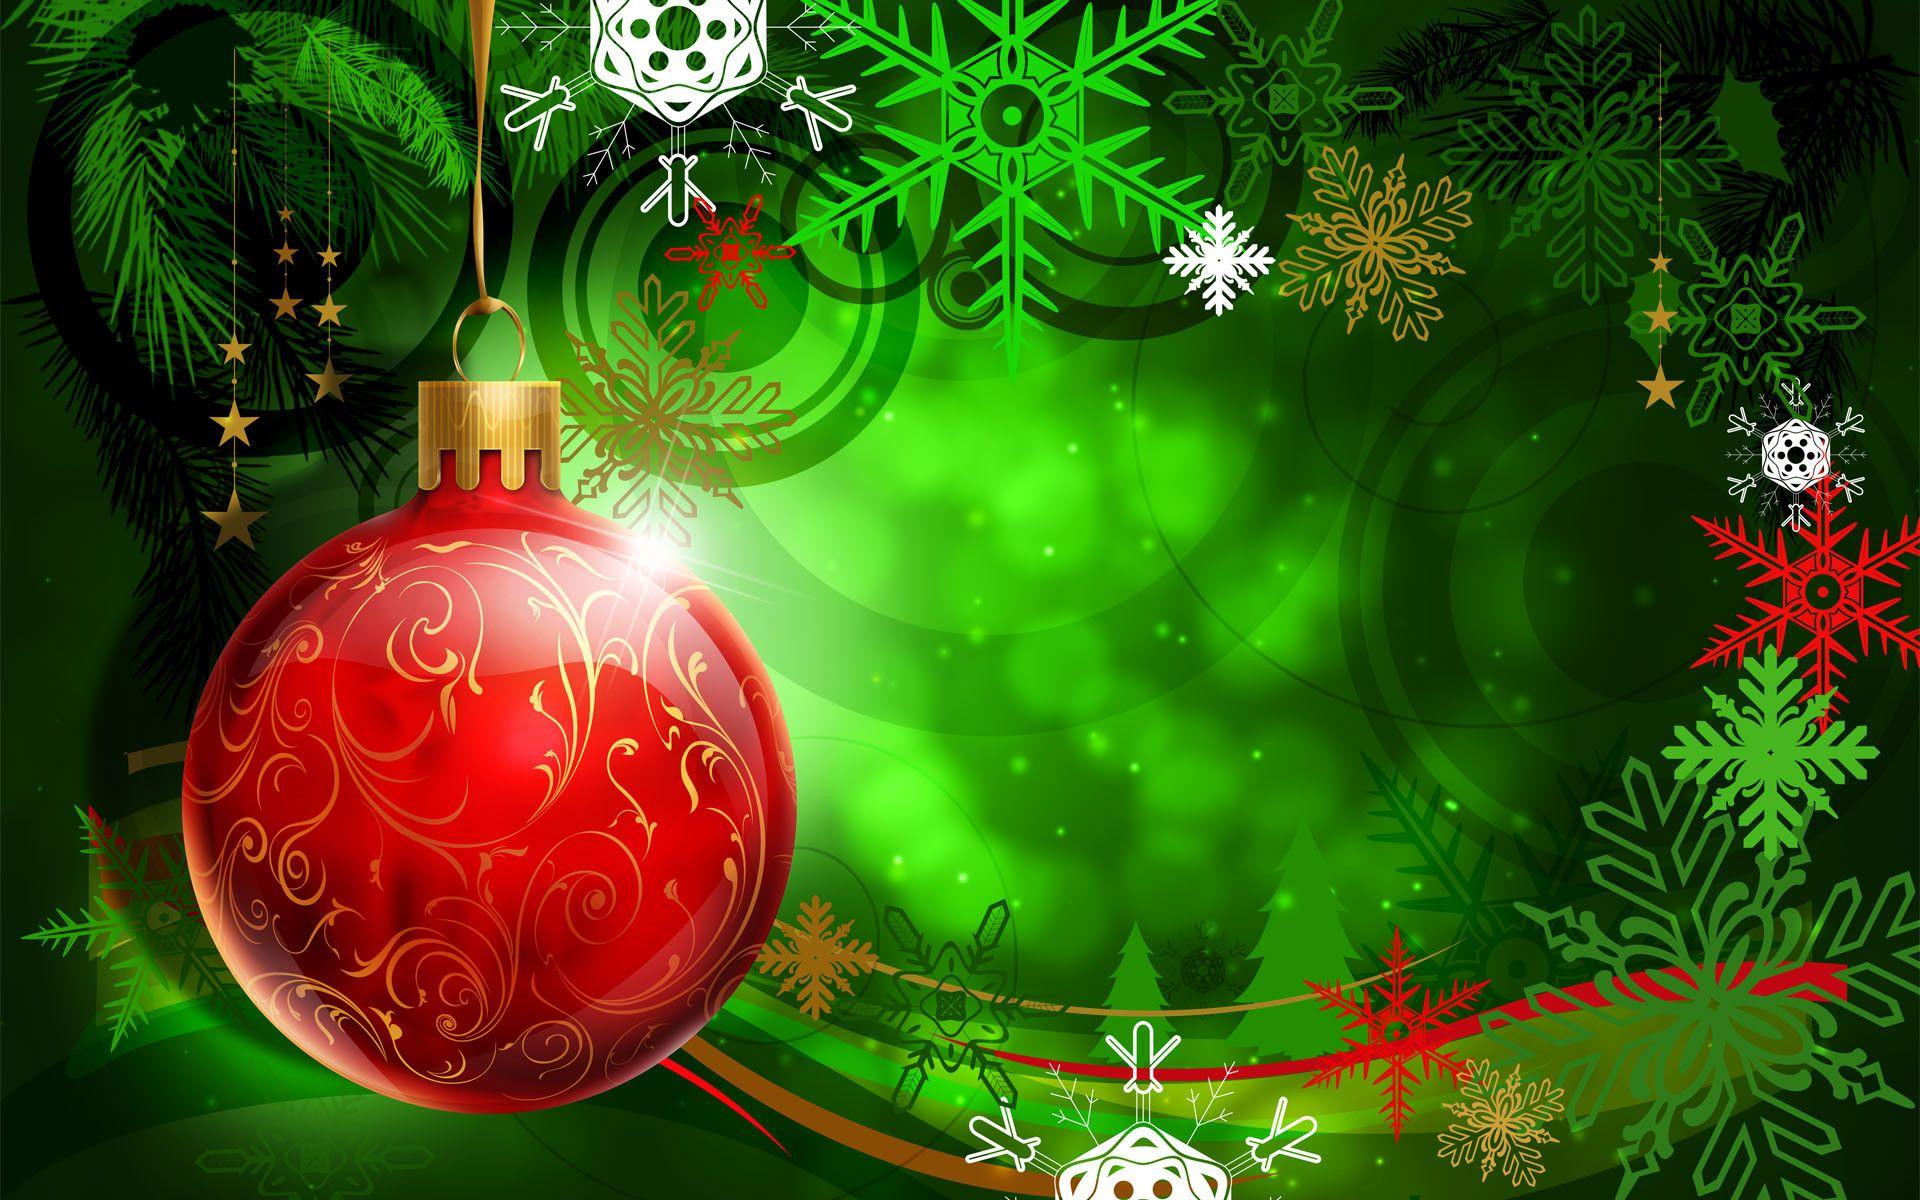 Bộ sưu tập hình nền Giáng Sinh màu xanh lá cây tươi sáng sẽ khiến cho màn hình của bạn trở nên sống động hơn bao giờ hết. Hãy truy cập hình ảnh để khám phá ngay hôm nay.